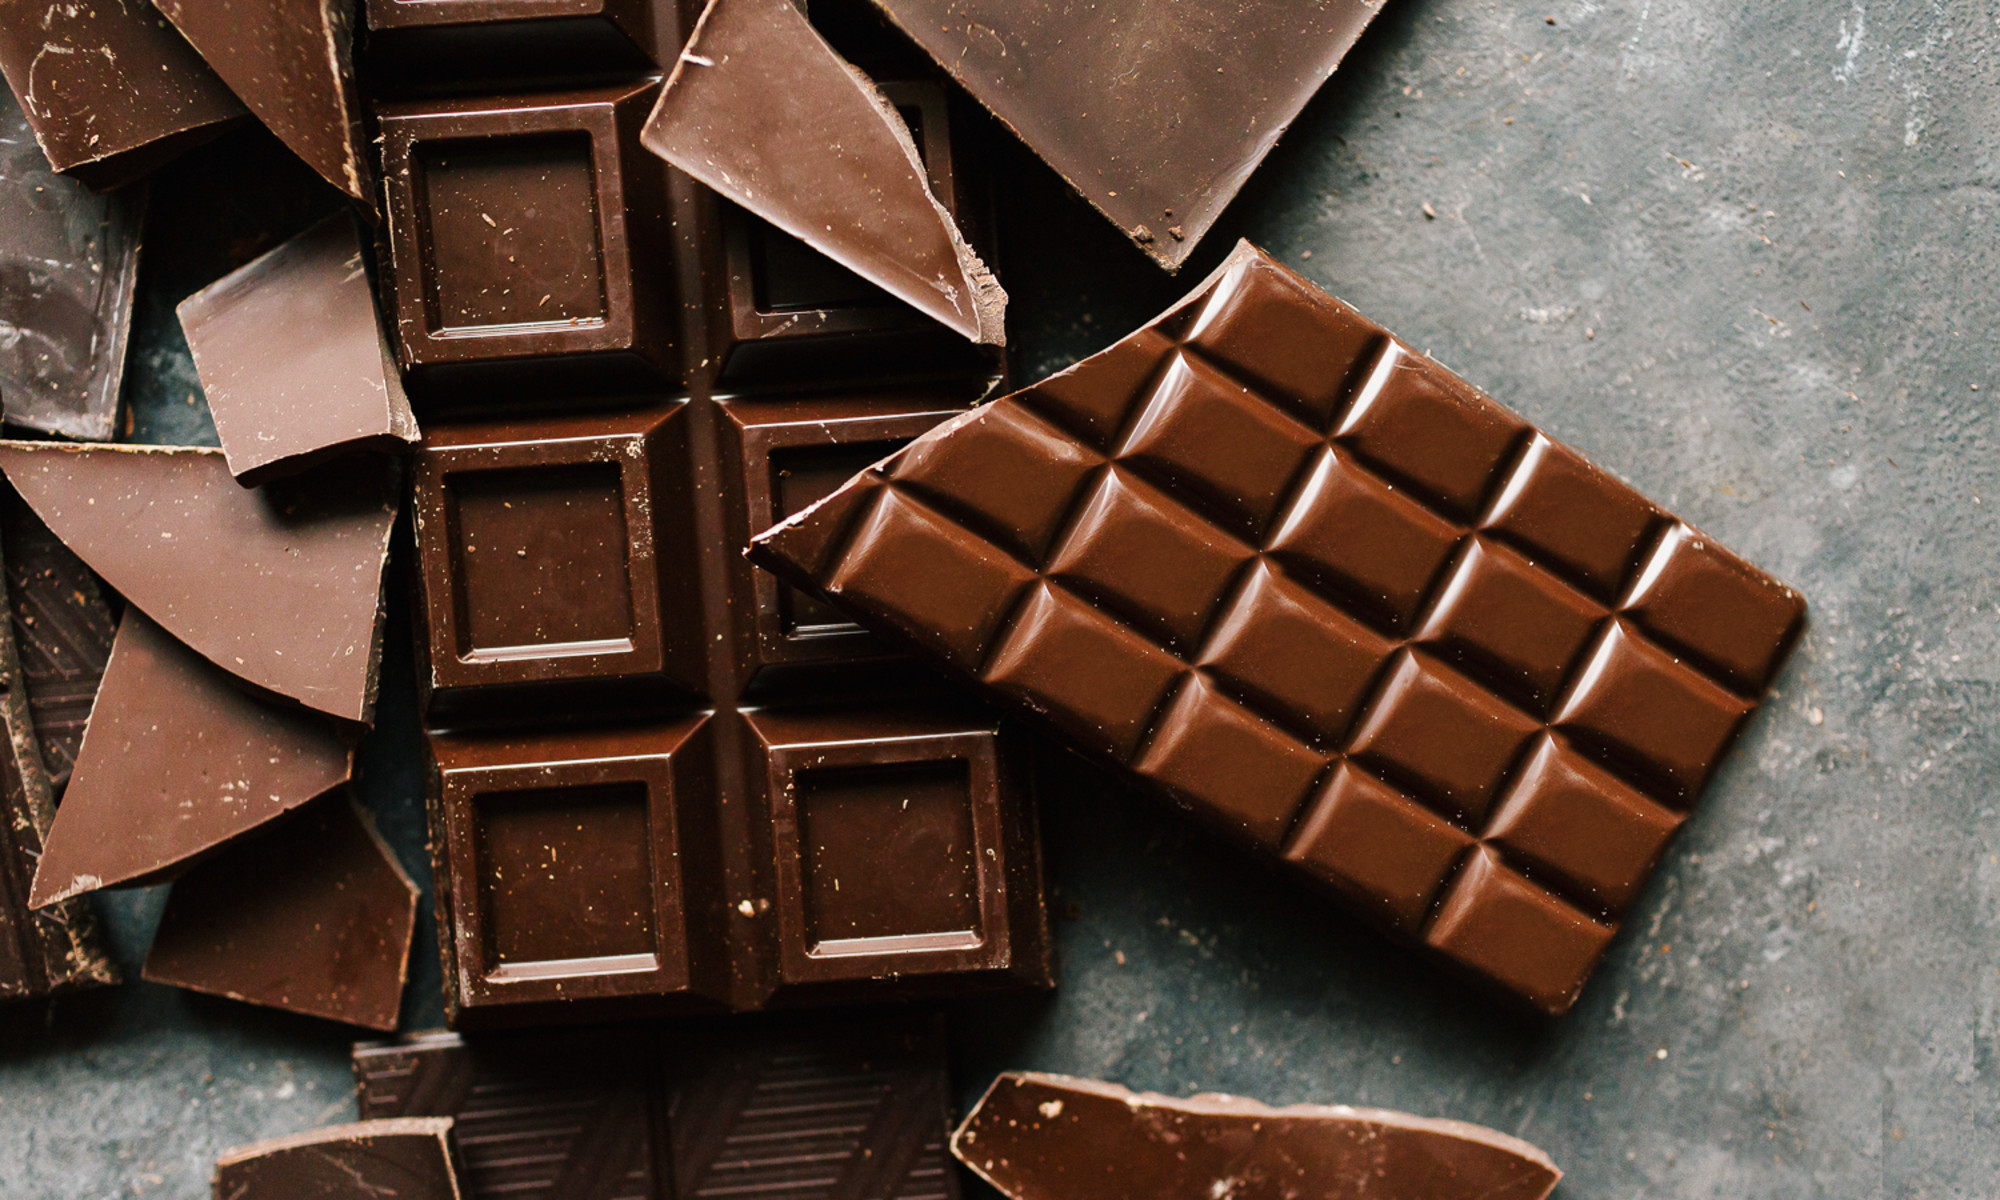 Что будет если съесть плитку шоколада. Шоколад белый против чёрного. Chocolate pattern. შოკოლადი photo.